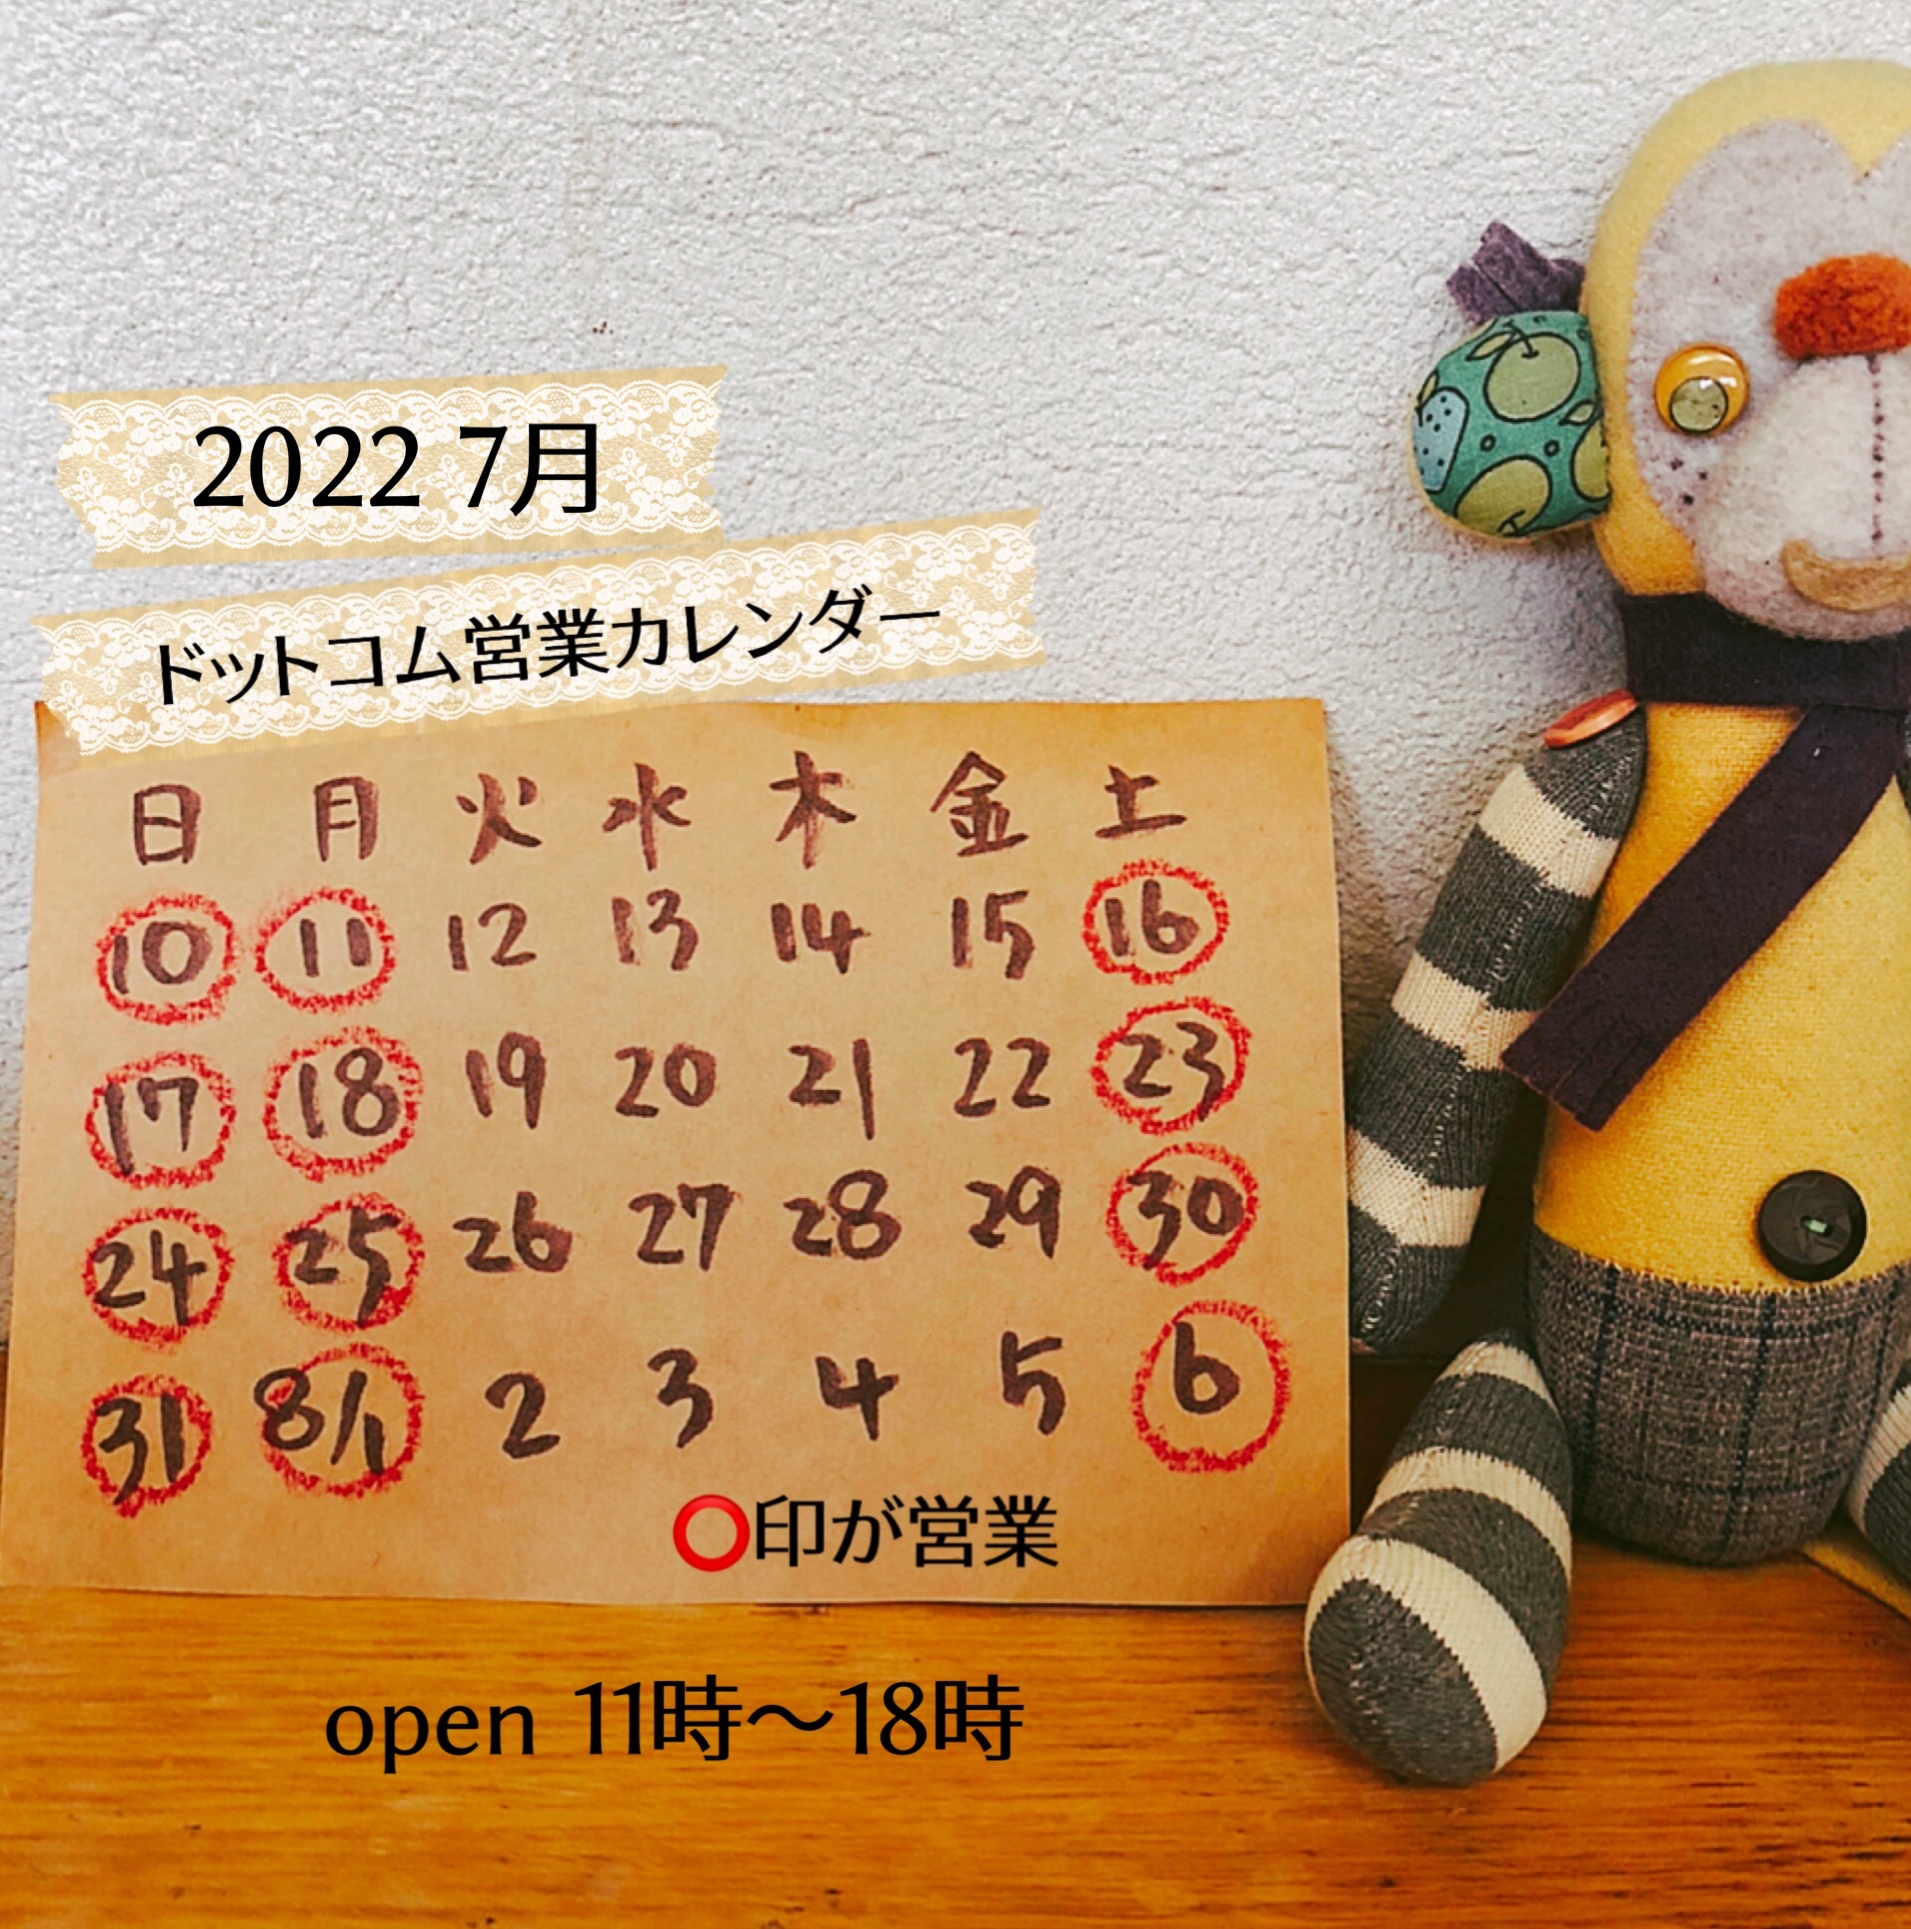 2022 7月営業カレンダー